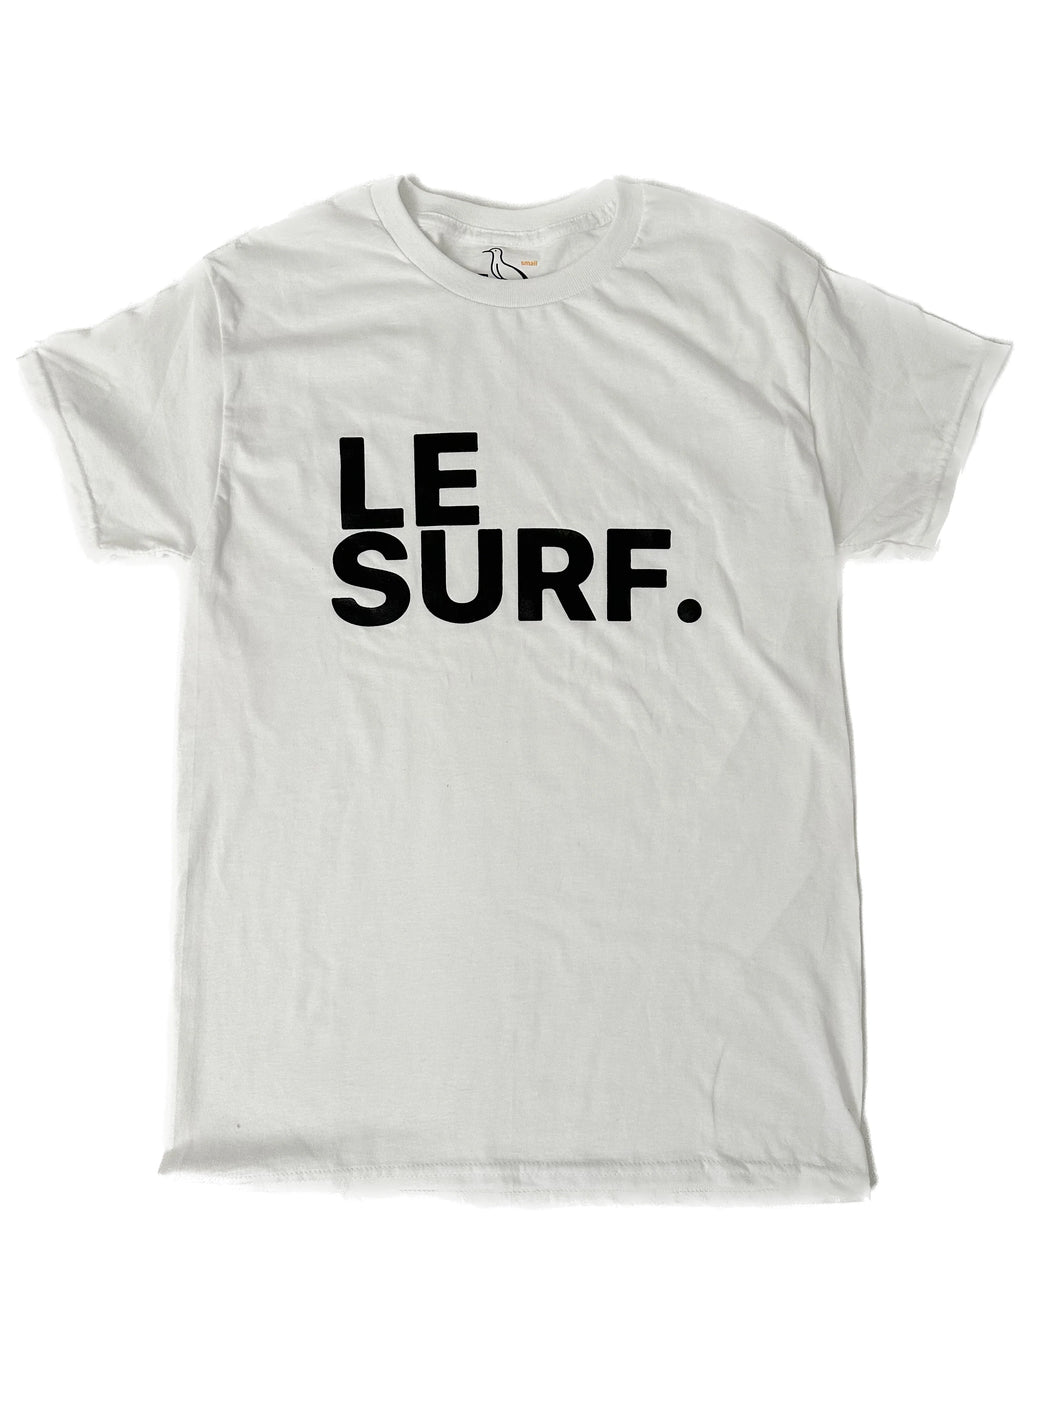 Le Surf. T-Shirt WHITE-BLACK